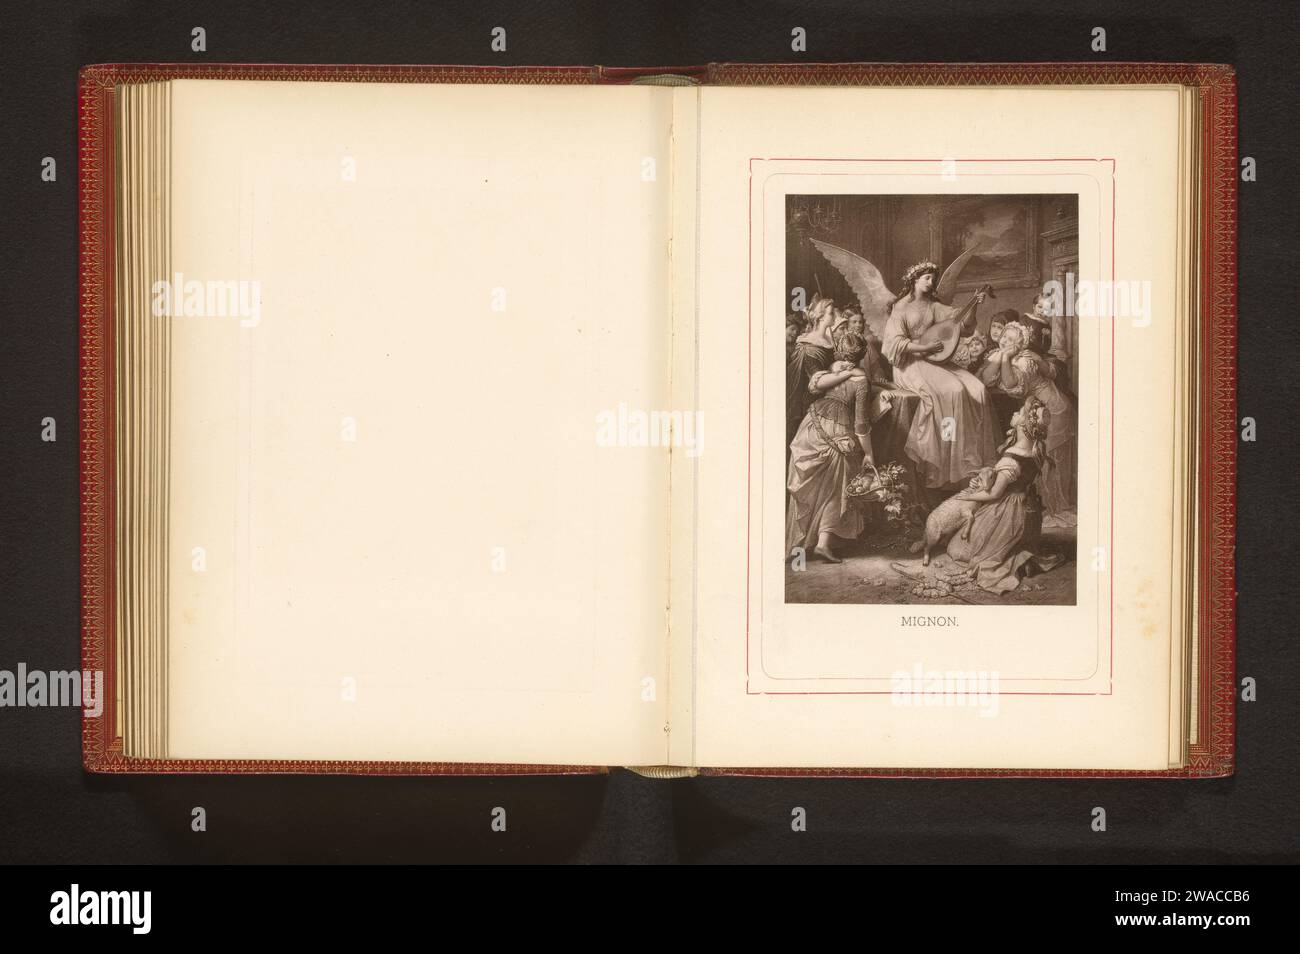 Fotoproduktion einer Zeichnung, die einen singenden Engel mit einer Laute zwischen Kindern darstellt, anonym, nach Wilhelm von Kaulbach, um 1875 - um 1885 fotomechanische Druckpapierkollotypenengel. Laute und spezielle Lautenformen, z. B. Theorbo. Kind Stockfoto